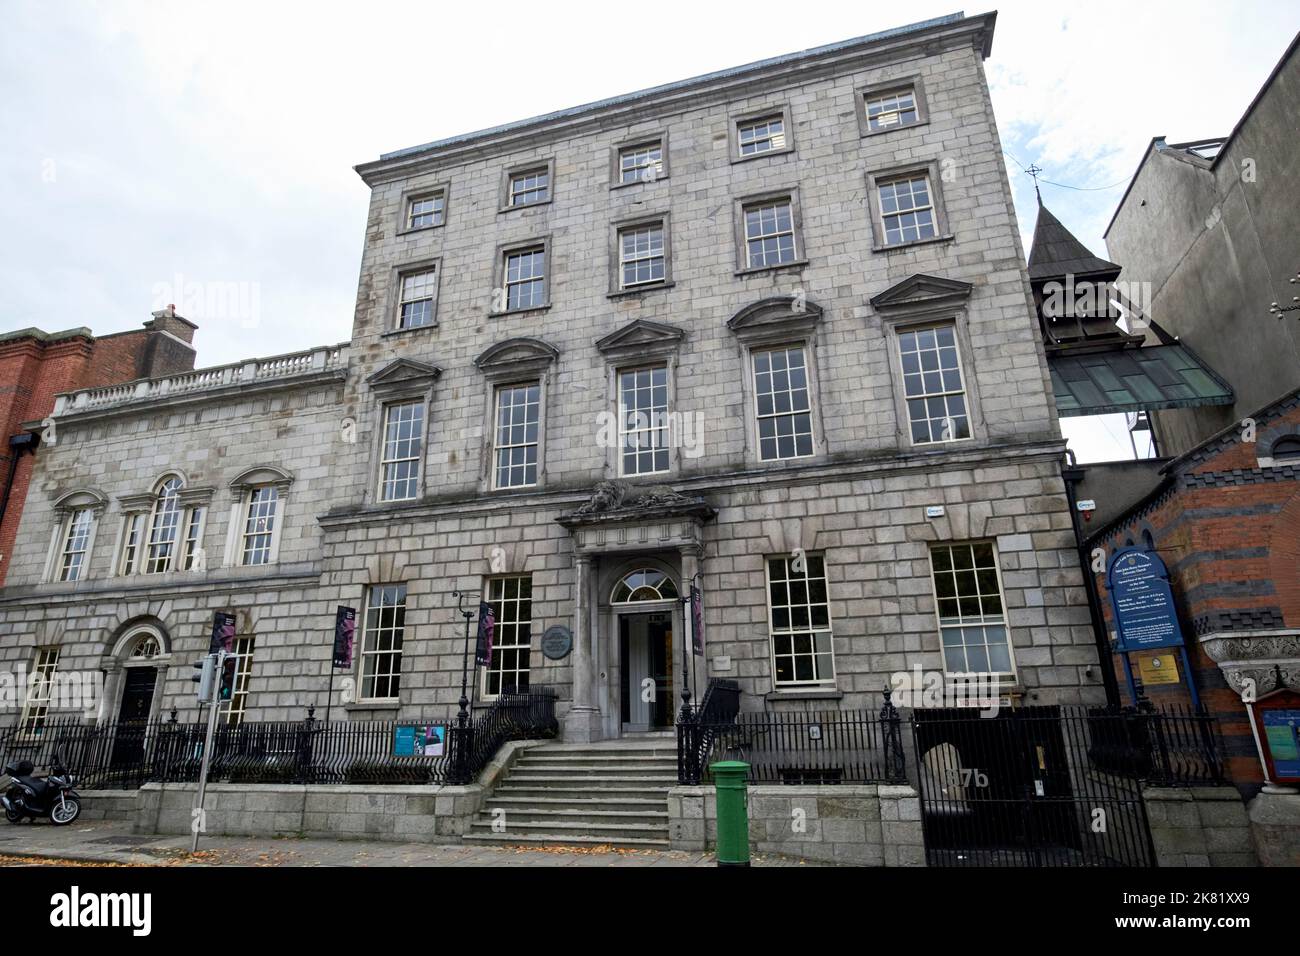 ucd newman maison georgienne maison de ville au musée moli de la littérature irlande dublin république d'irlande Banque D'Images